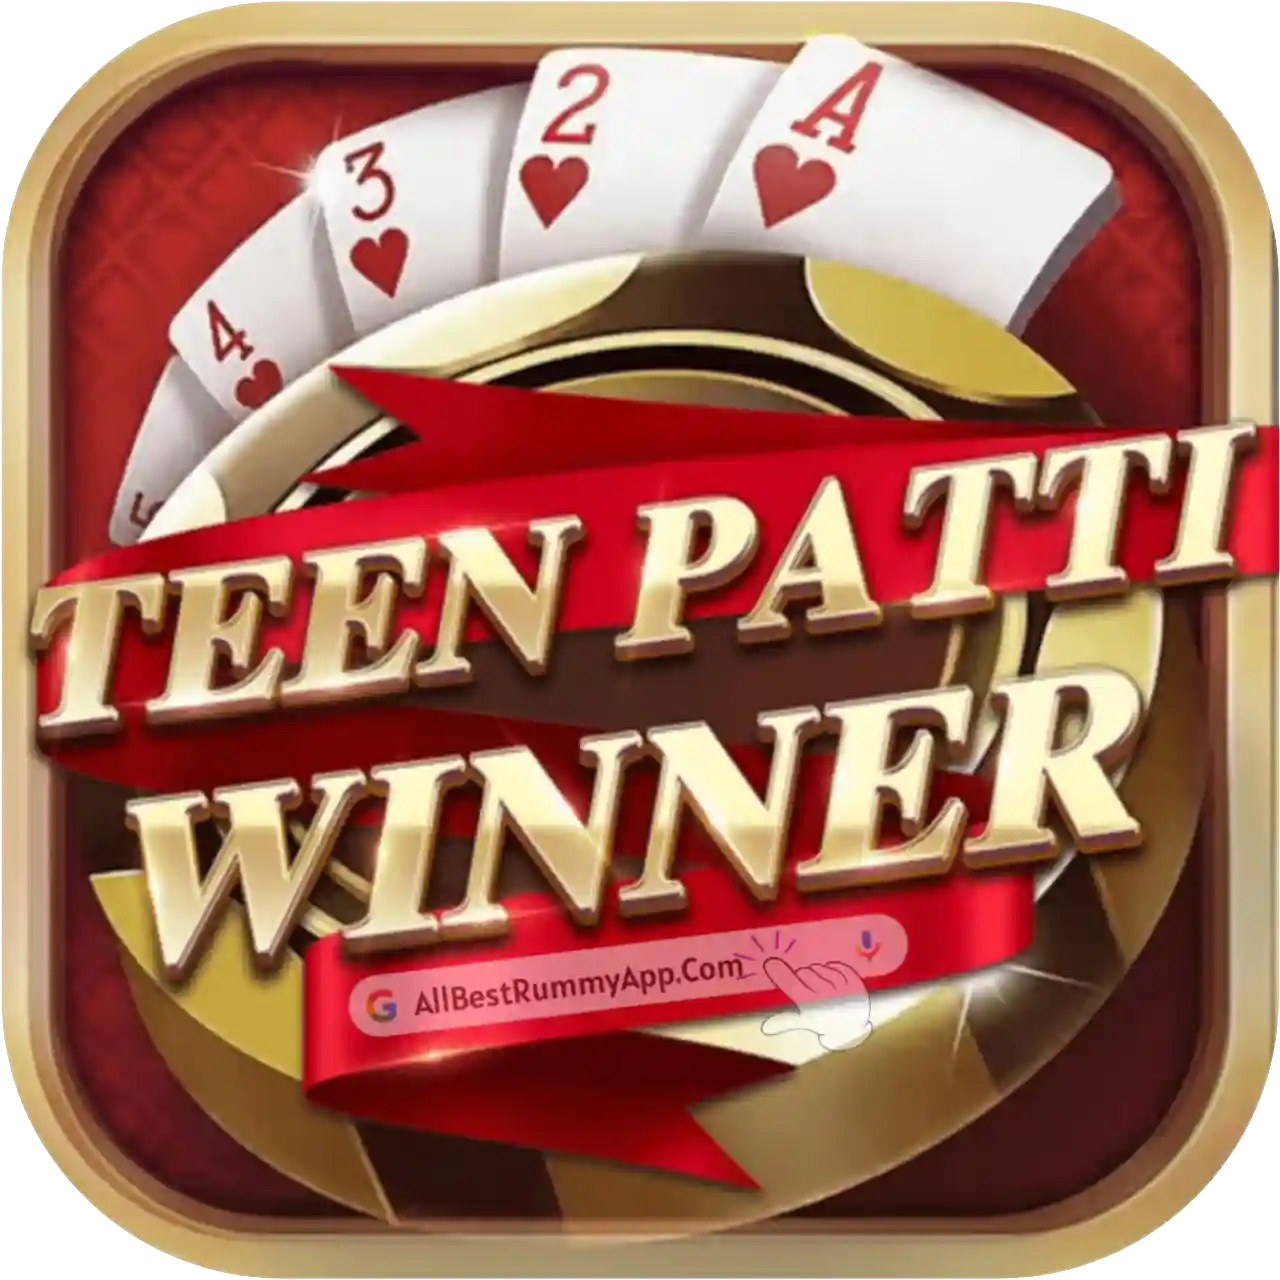 Teen Patti Winner Logo - All Best Rummy App